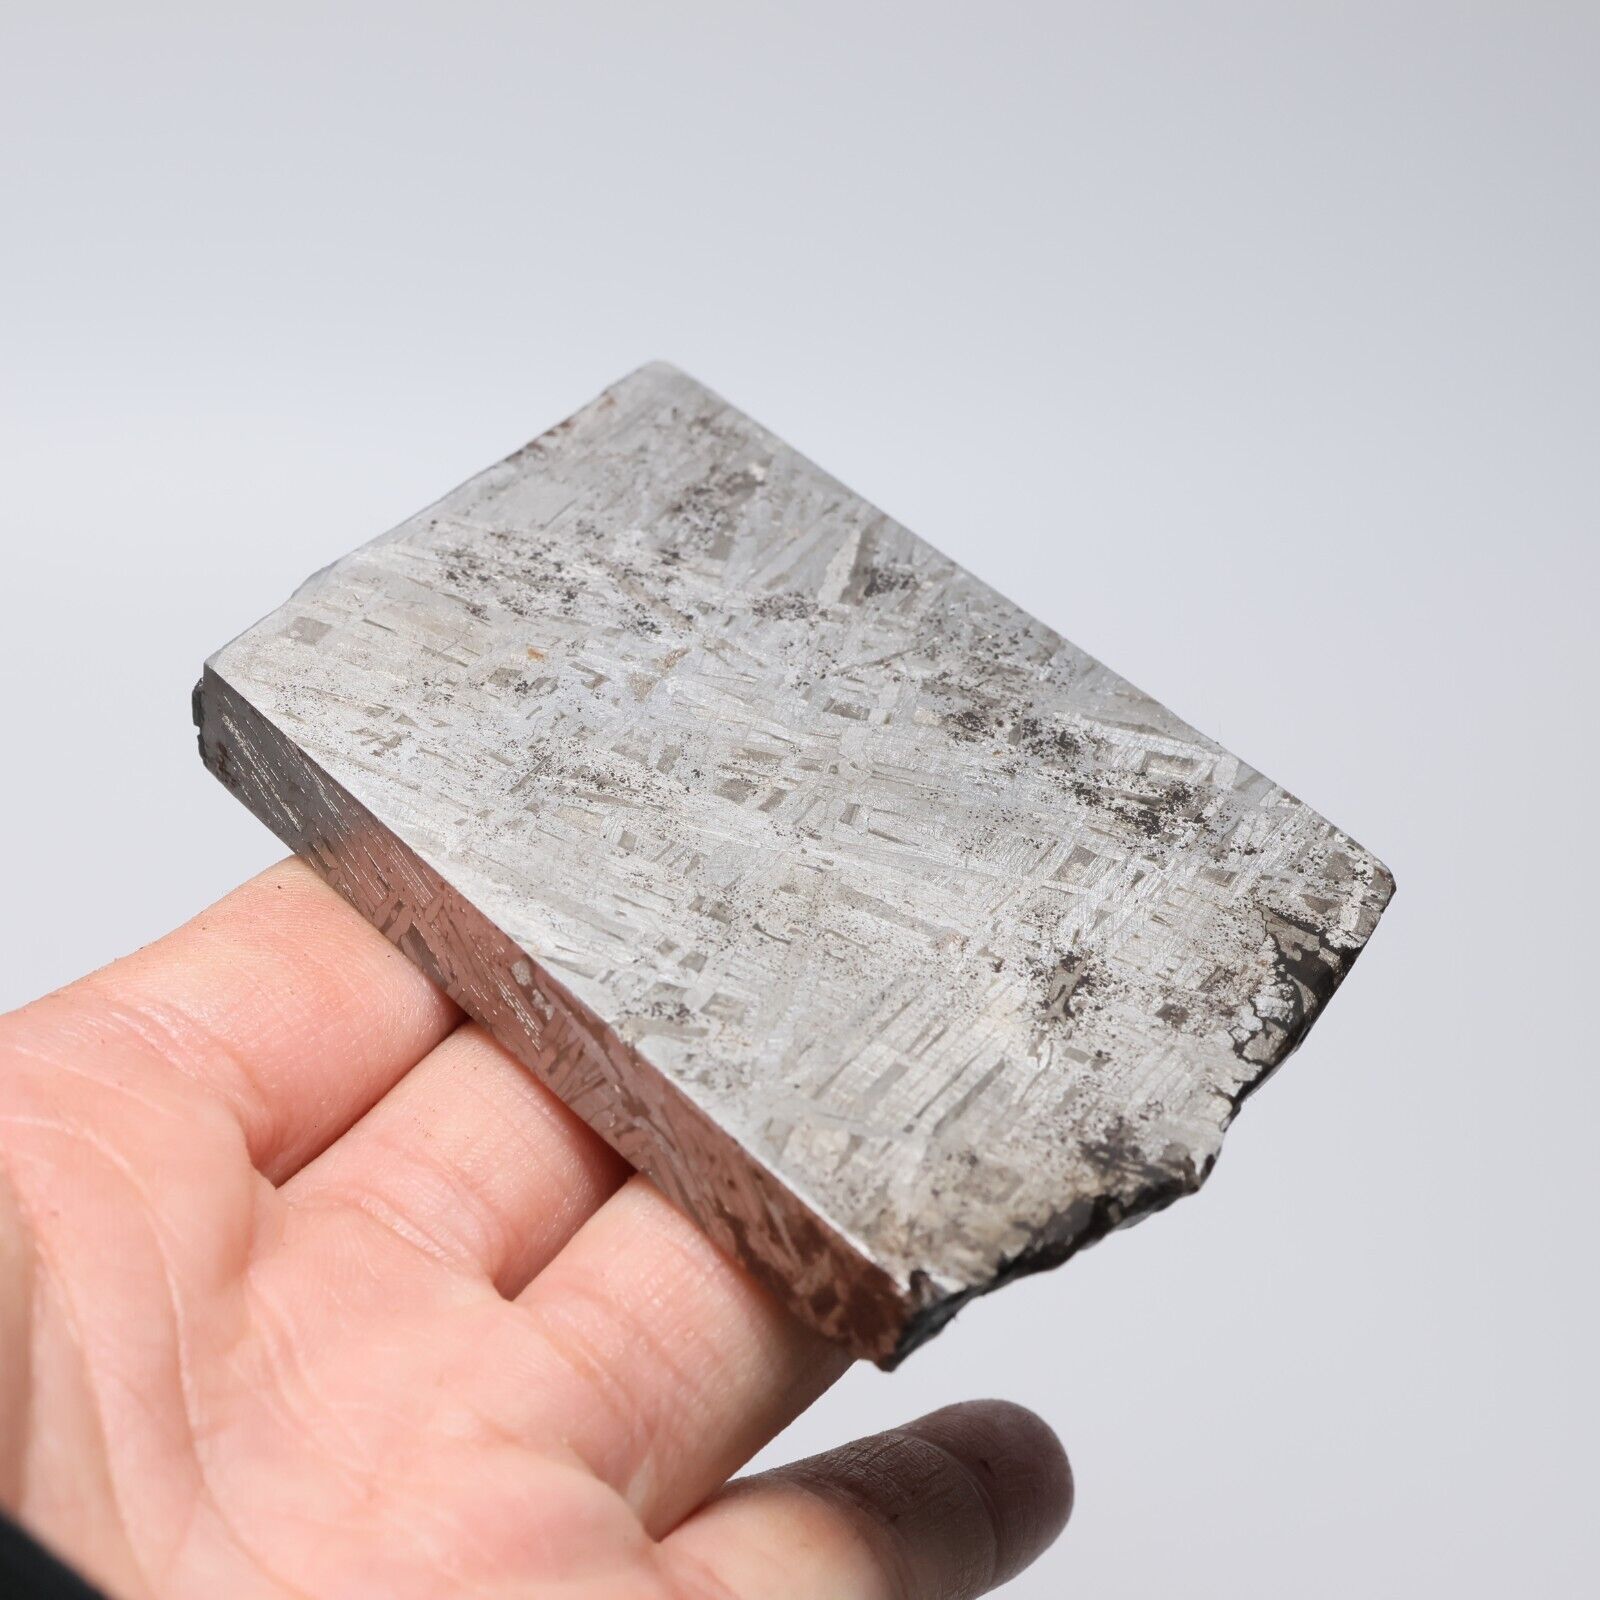 245g Muonionalusta meteorite part slice  A1971